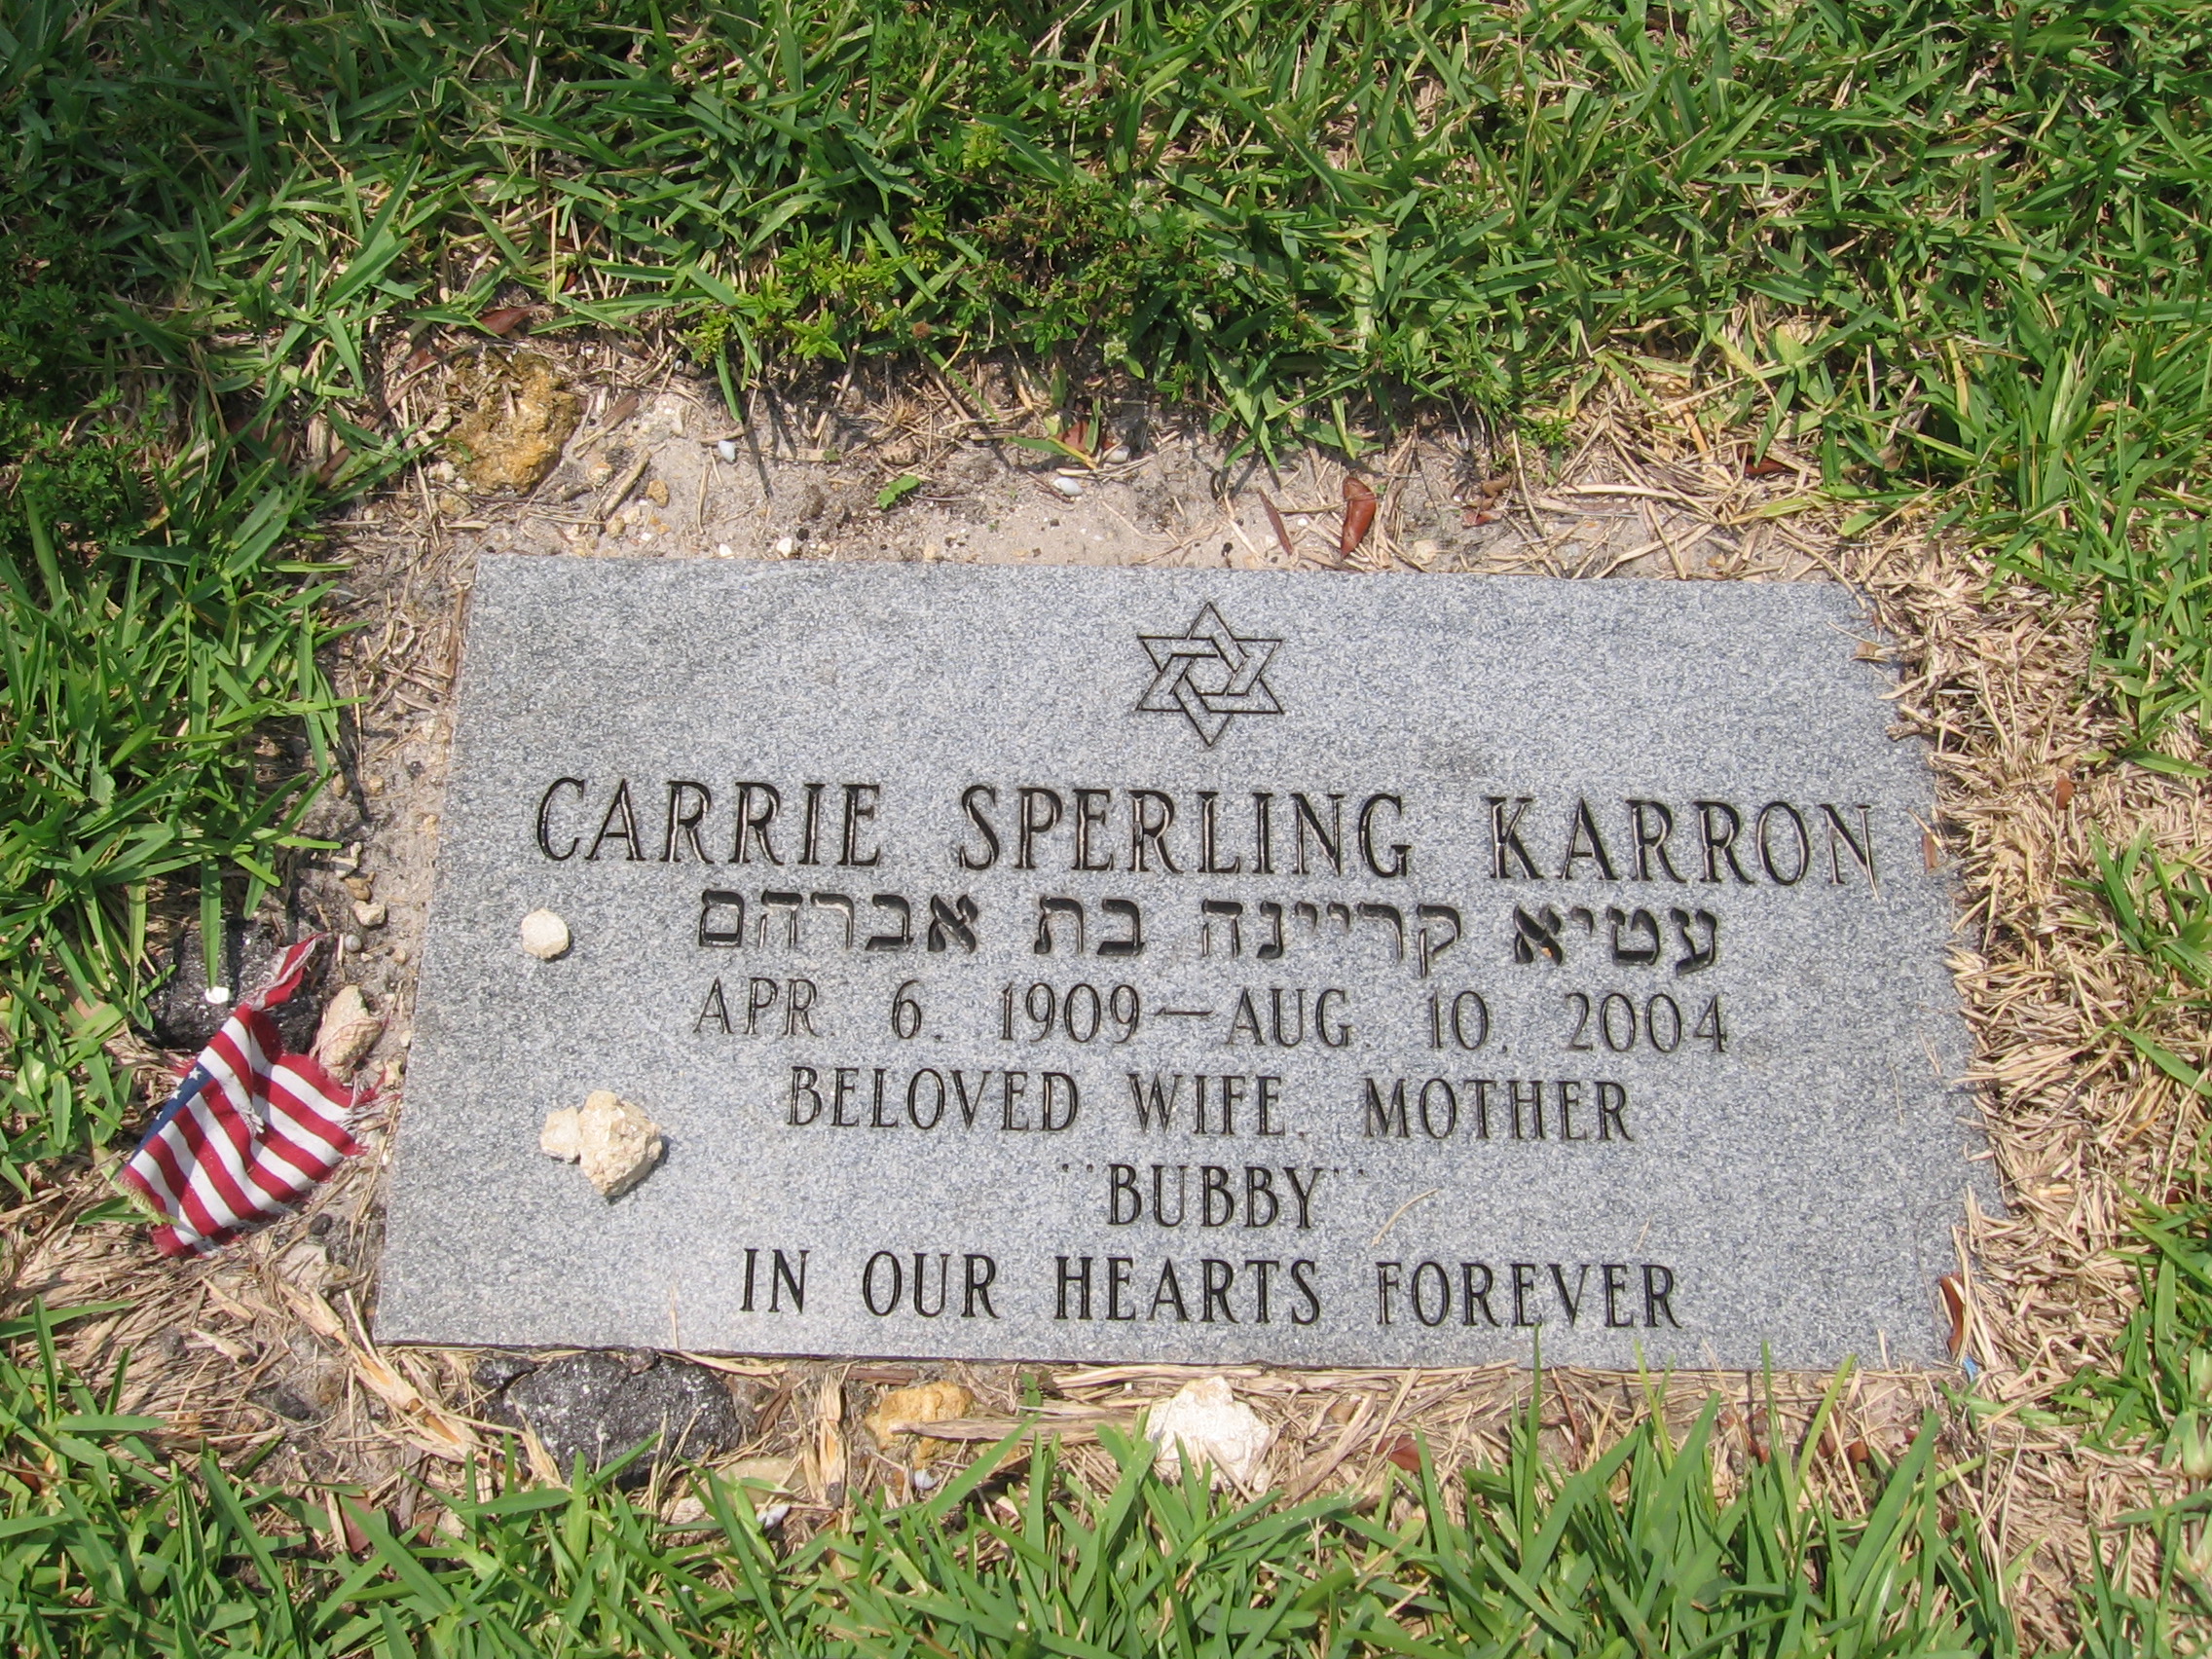 Carrie Sperling Karron